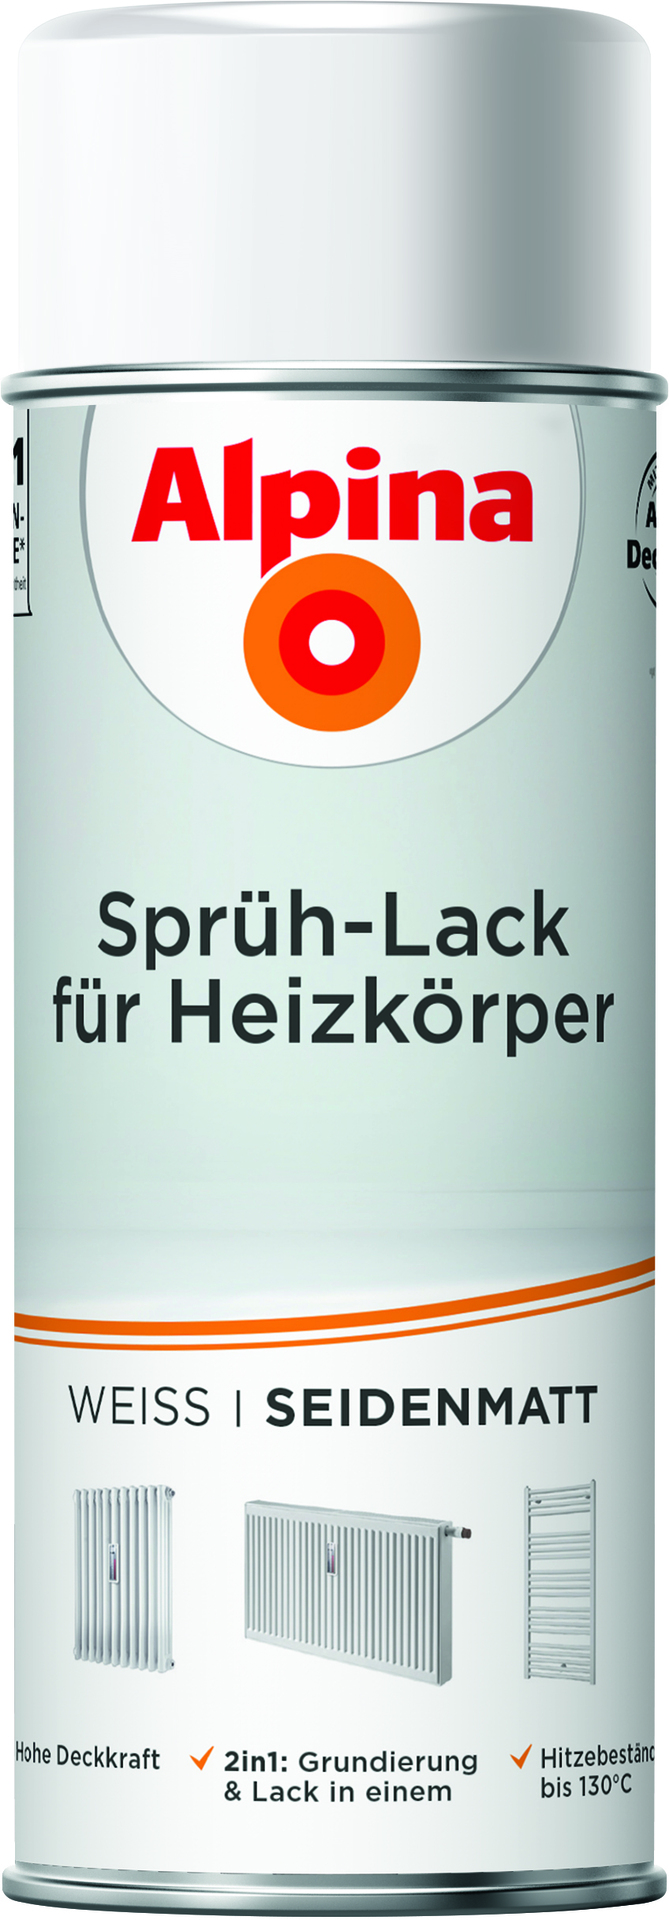 Alpina Farben GmbH Sprüh-Lack für Heizkörper